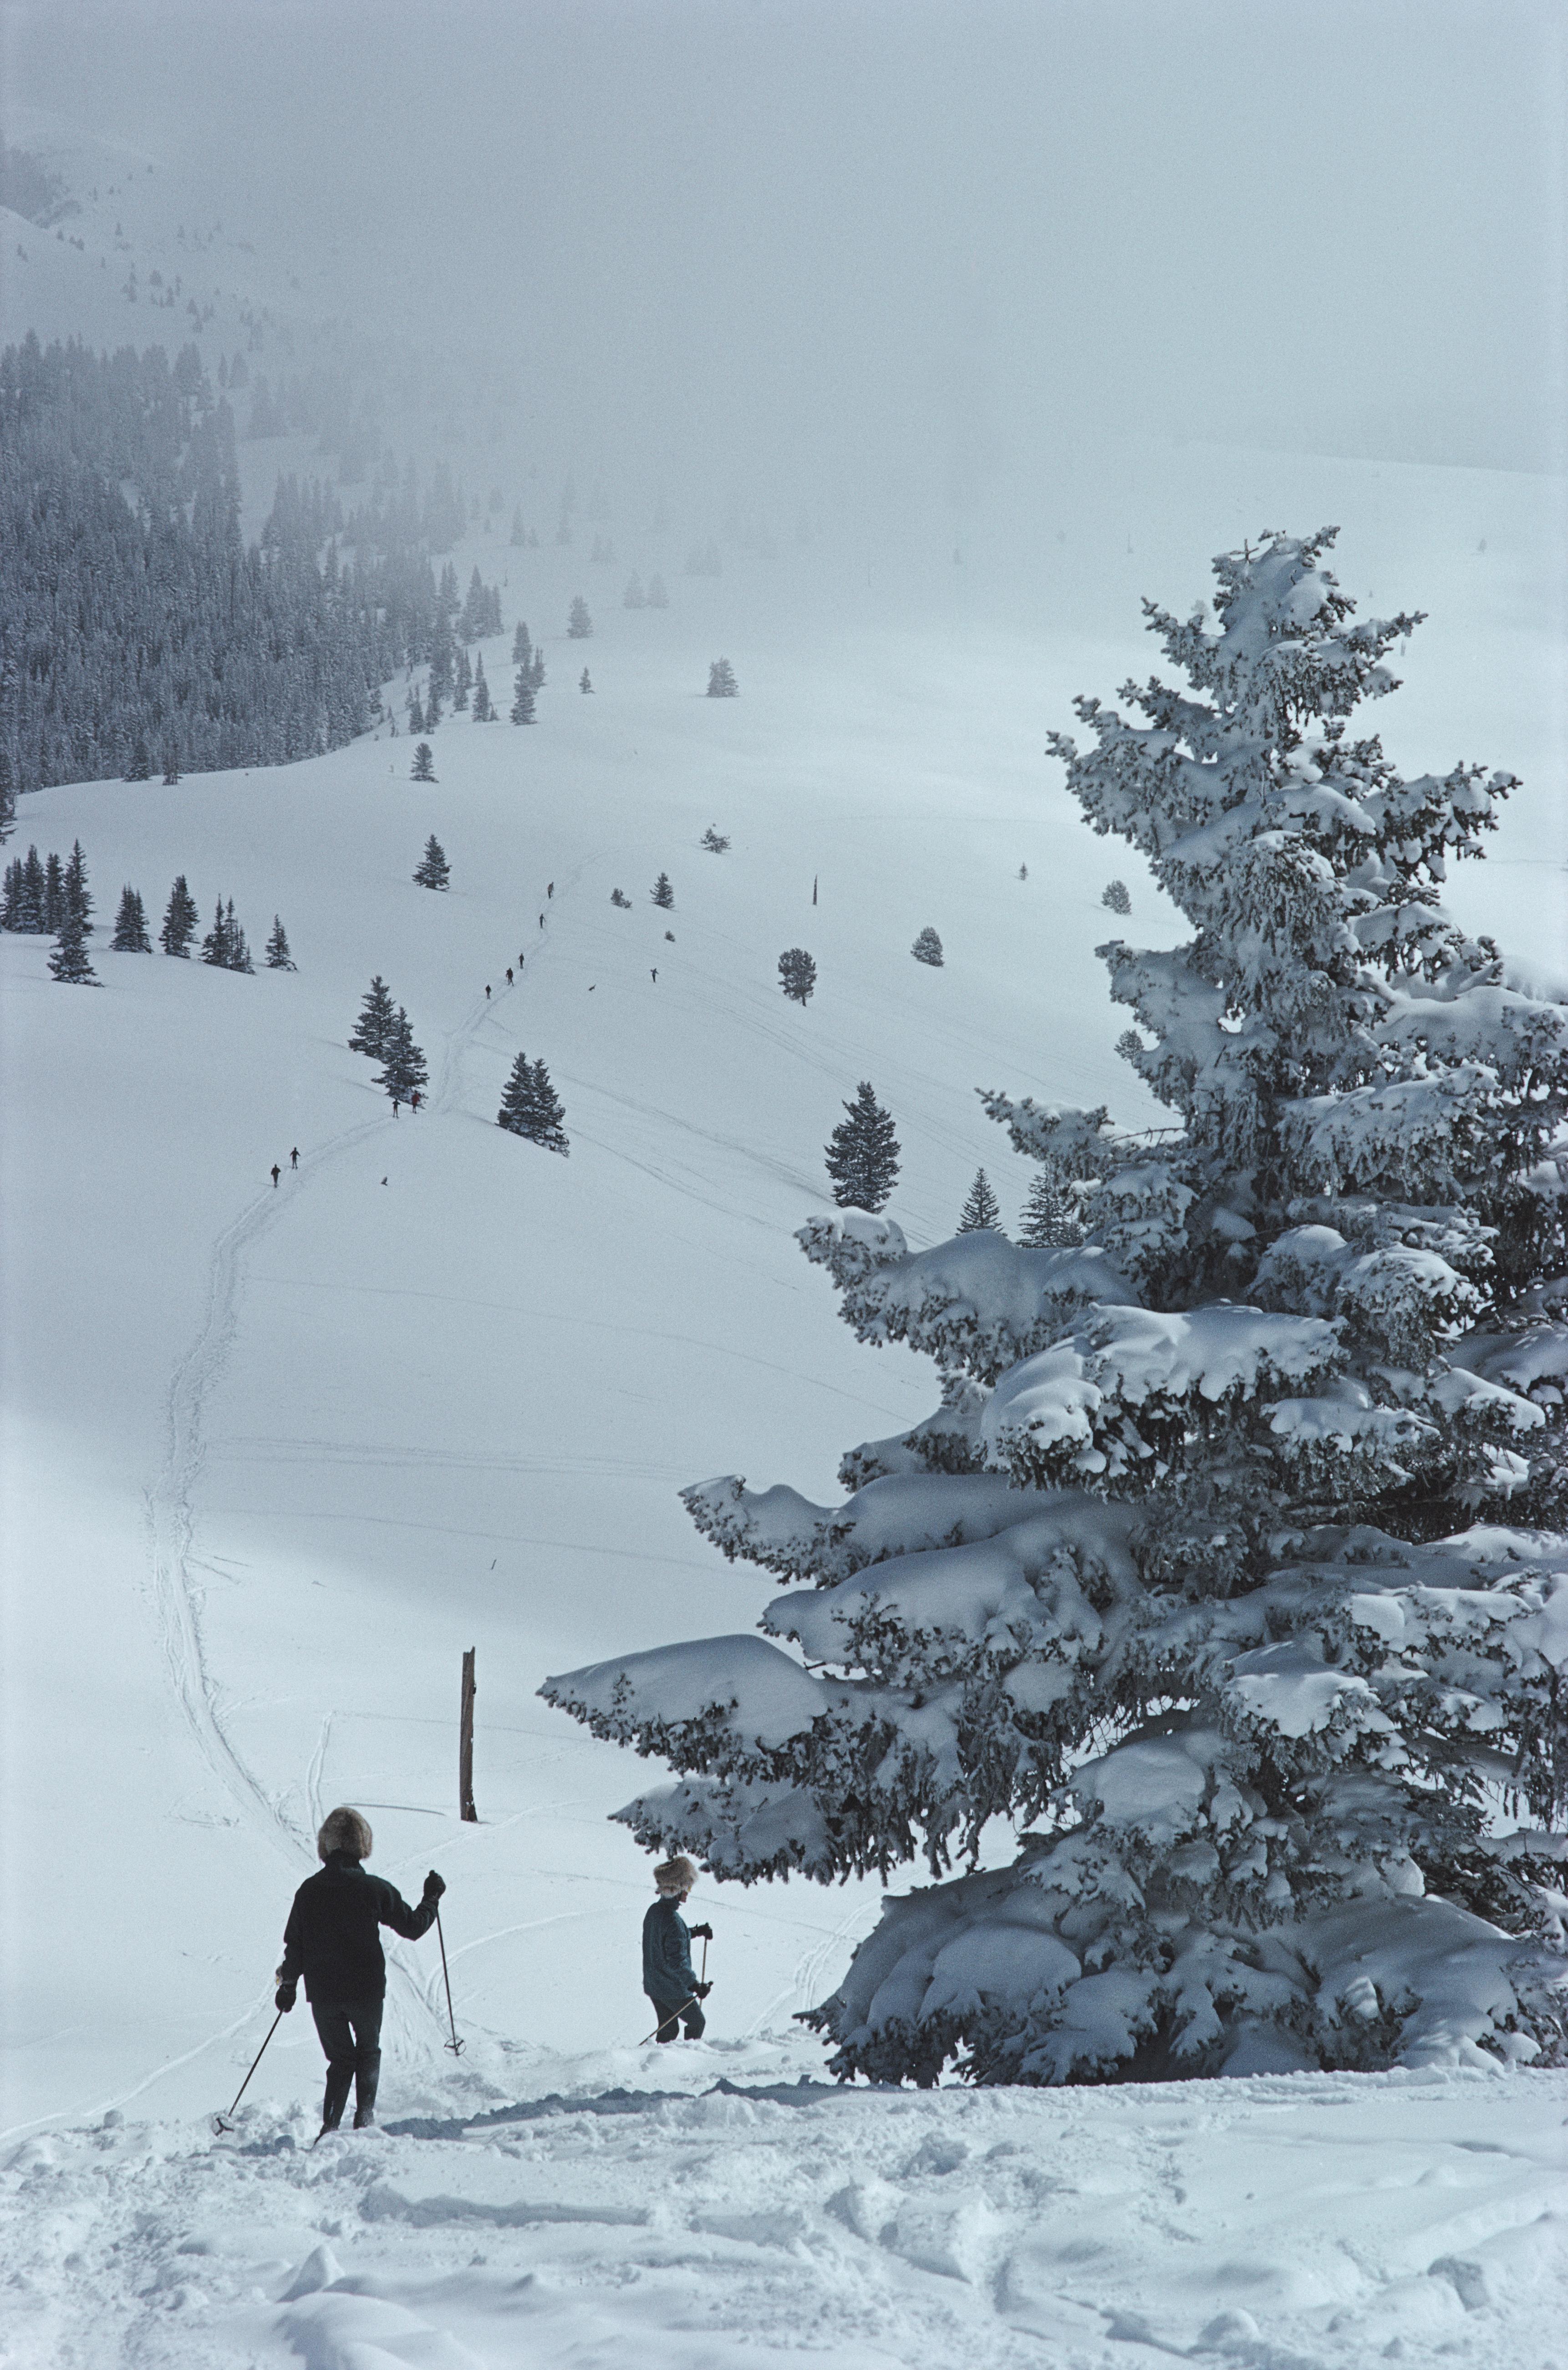 skifahren in Vail' 1964 Slim Aarons Limited Estate Edition Druck 

Skifahrer fahren an einem schneebedeckten Baum in Vail, Colorado, USA, 1964, vorbei.

Hergestellt aus der Originalfolie
Mitgeliefertes Echtheitszertifikat 
Archiv